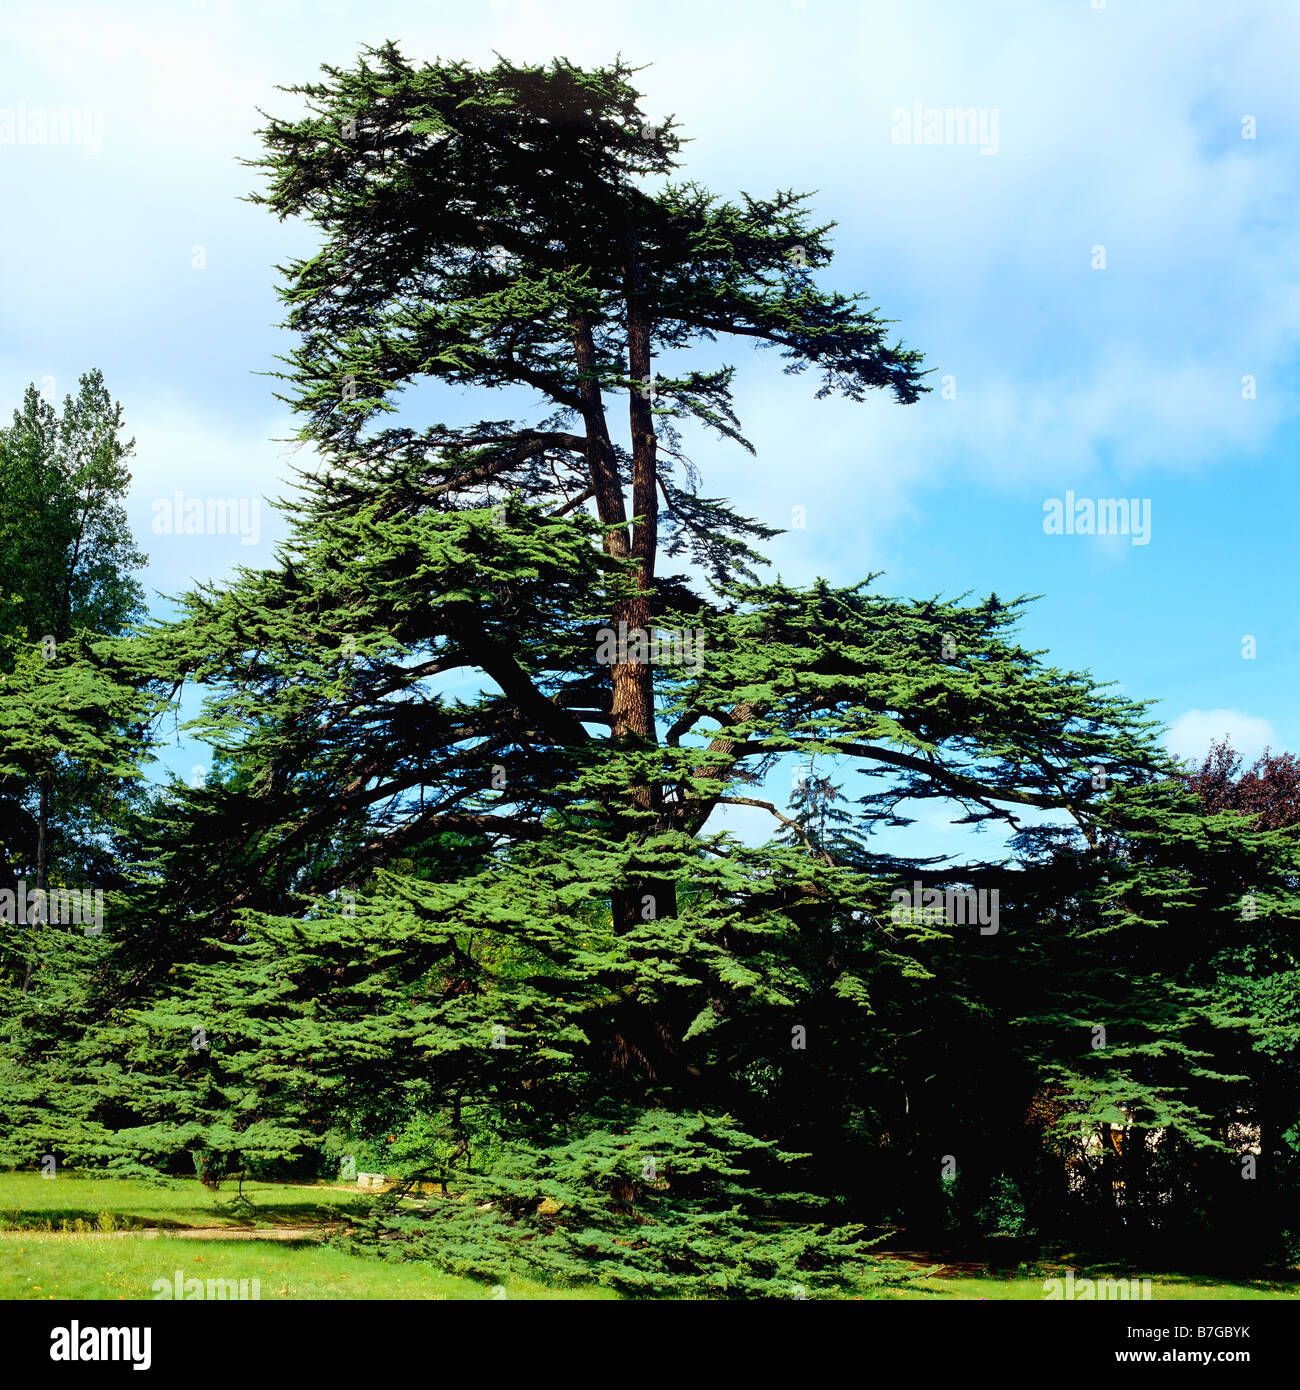 Marengo battle commemorative Cedar tree planted by Josephine de Beauharnais in 1800 in park of Chateau de la Malmaison castle France Europe Stock Photo